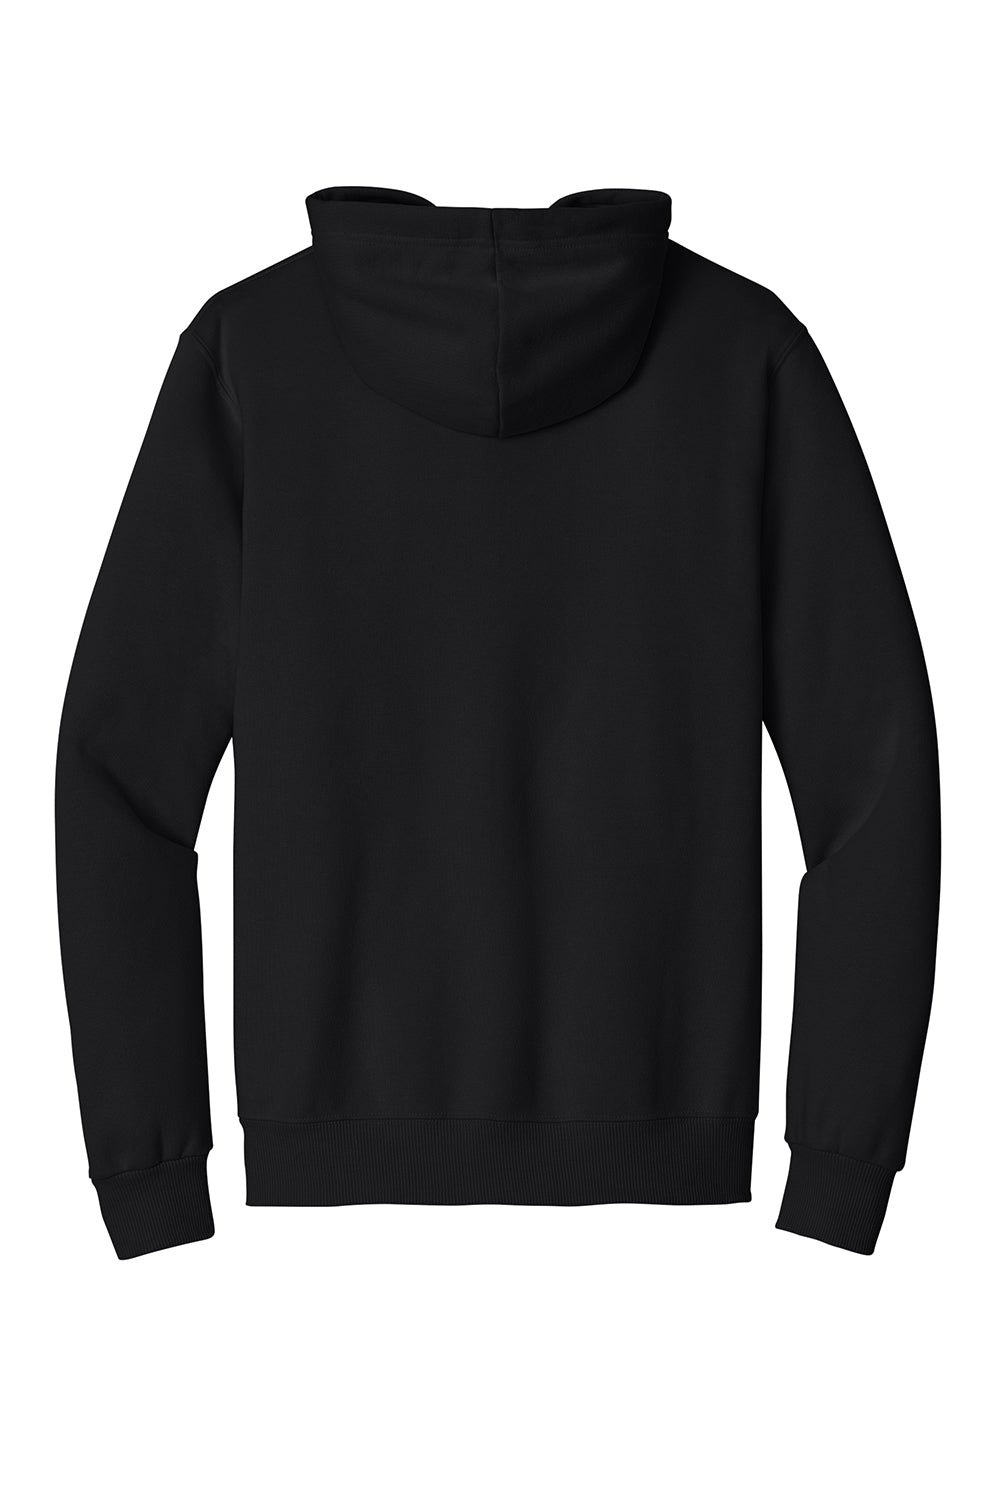 Jerzees 700M Mens Eco Premium Hooded Sweatshirt Hoodie Ink Black Flat Back